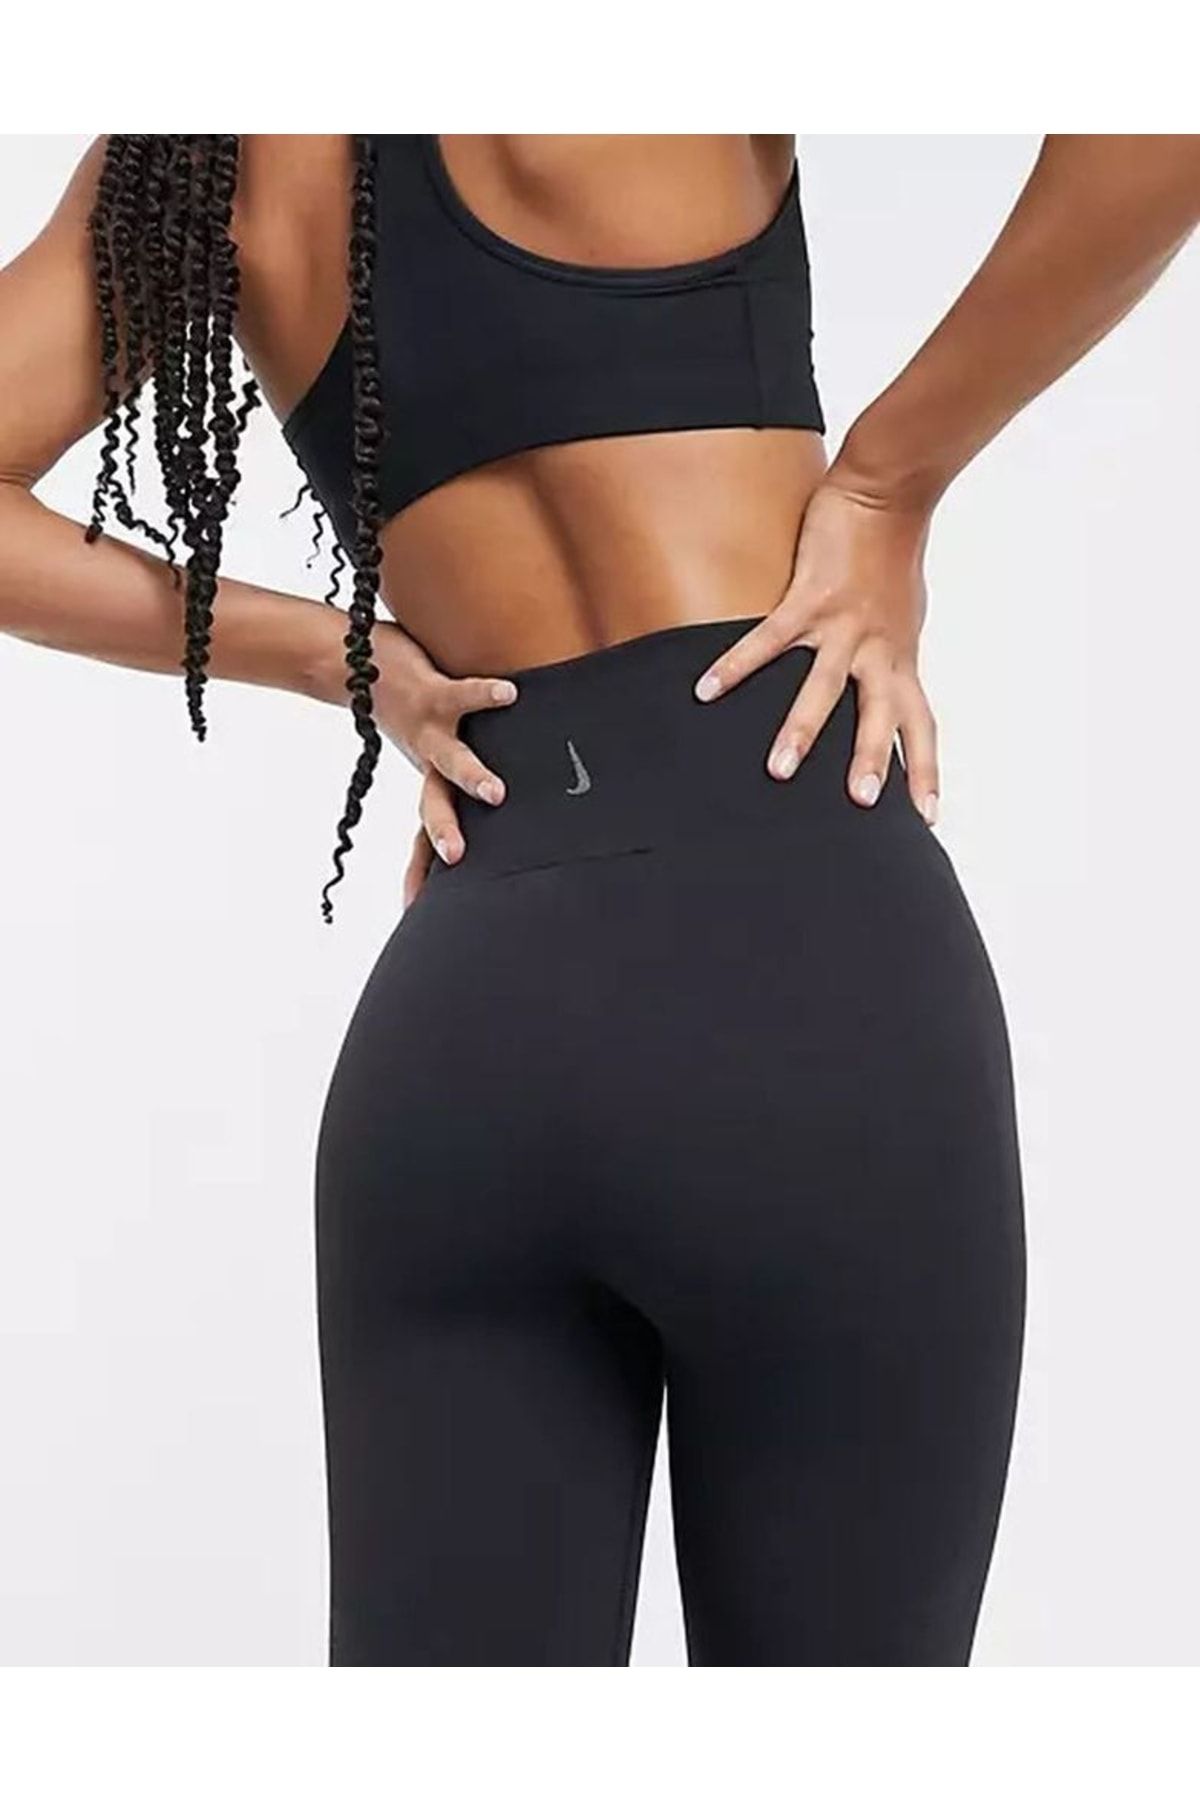 Nike The Yoga 7-8 Tight Kadın Siyah Antrenman Taytı Cu5293-010